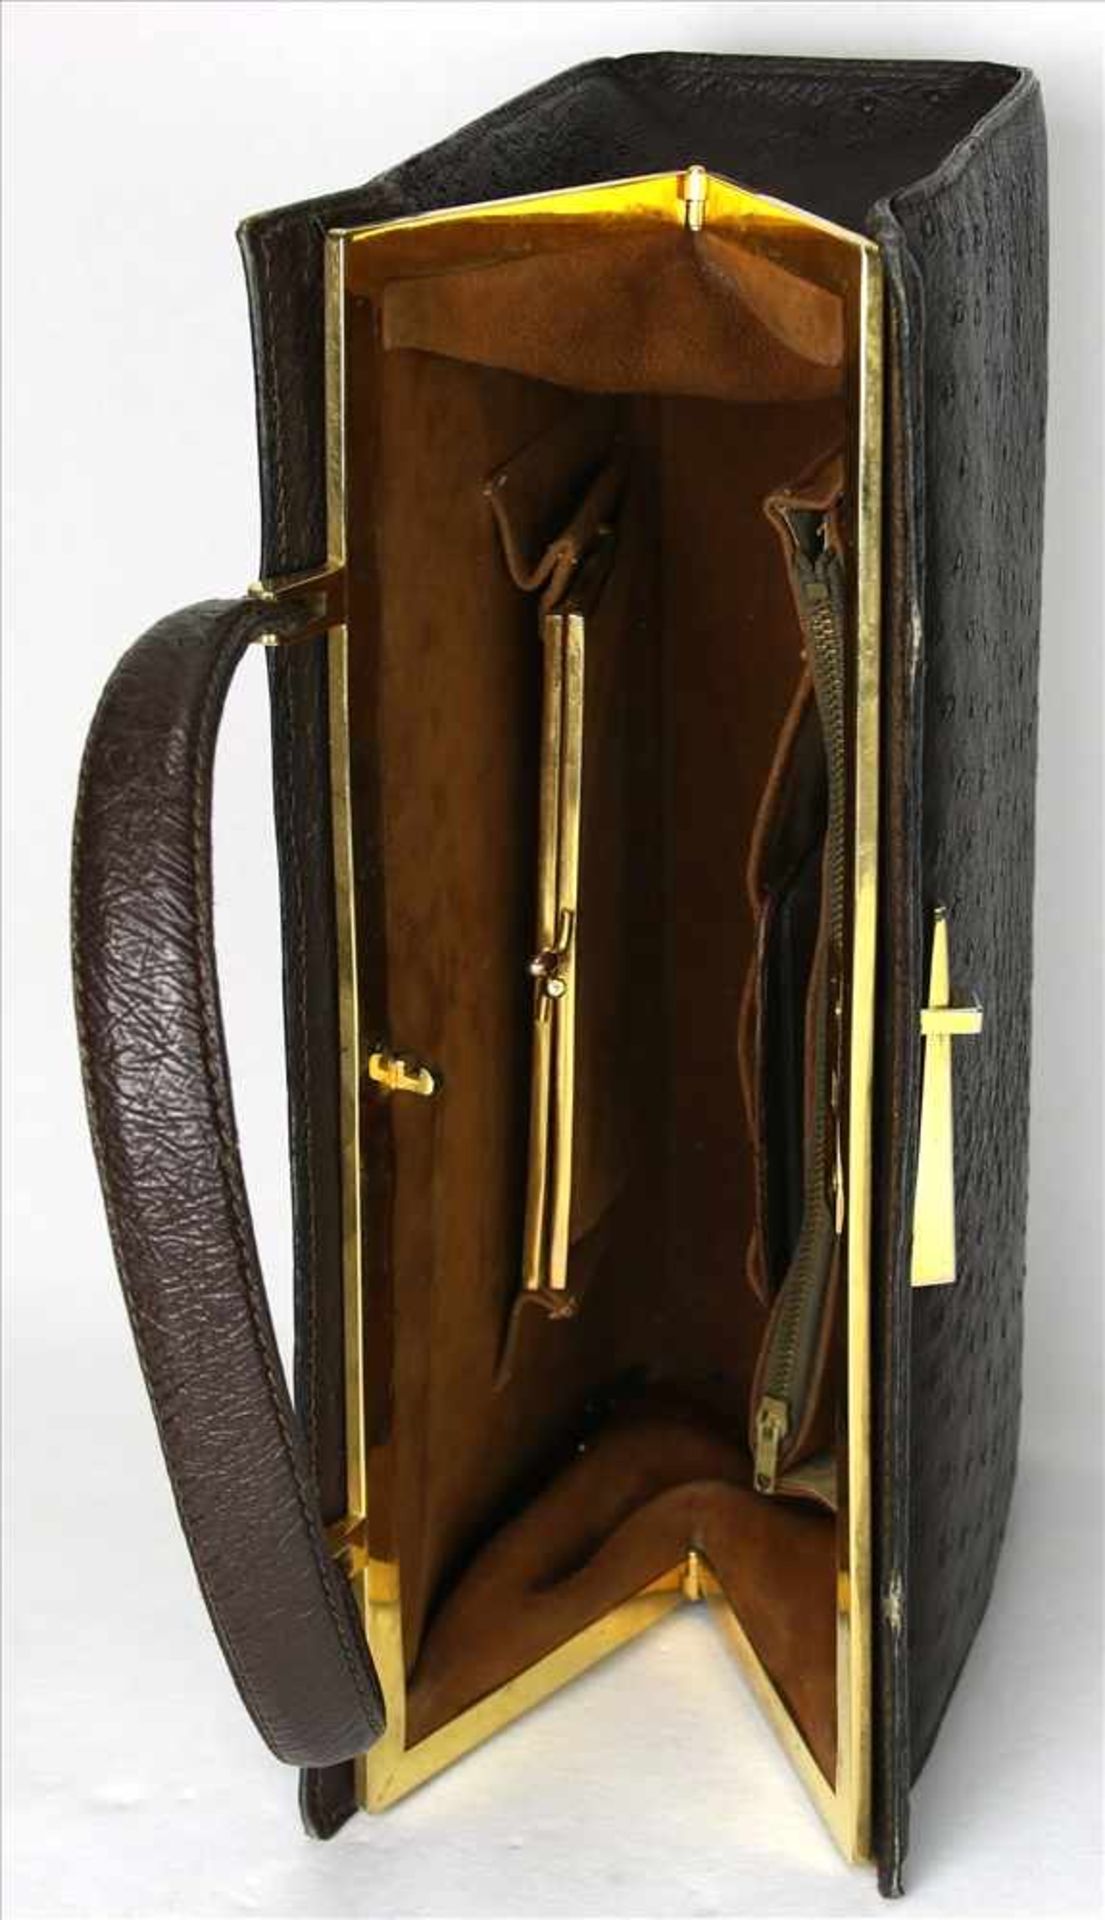 Vintage Handtasche1970-er Jahre. Straußenleder. Größe ca. 31 x 10 cm, Höhe ca. 20 cm ohne Henkel. - Bild 3 aus 3